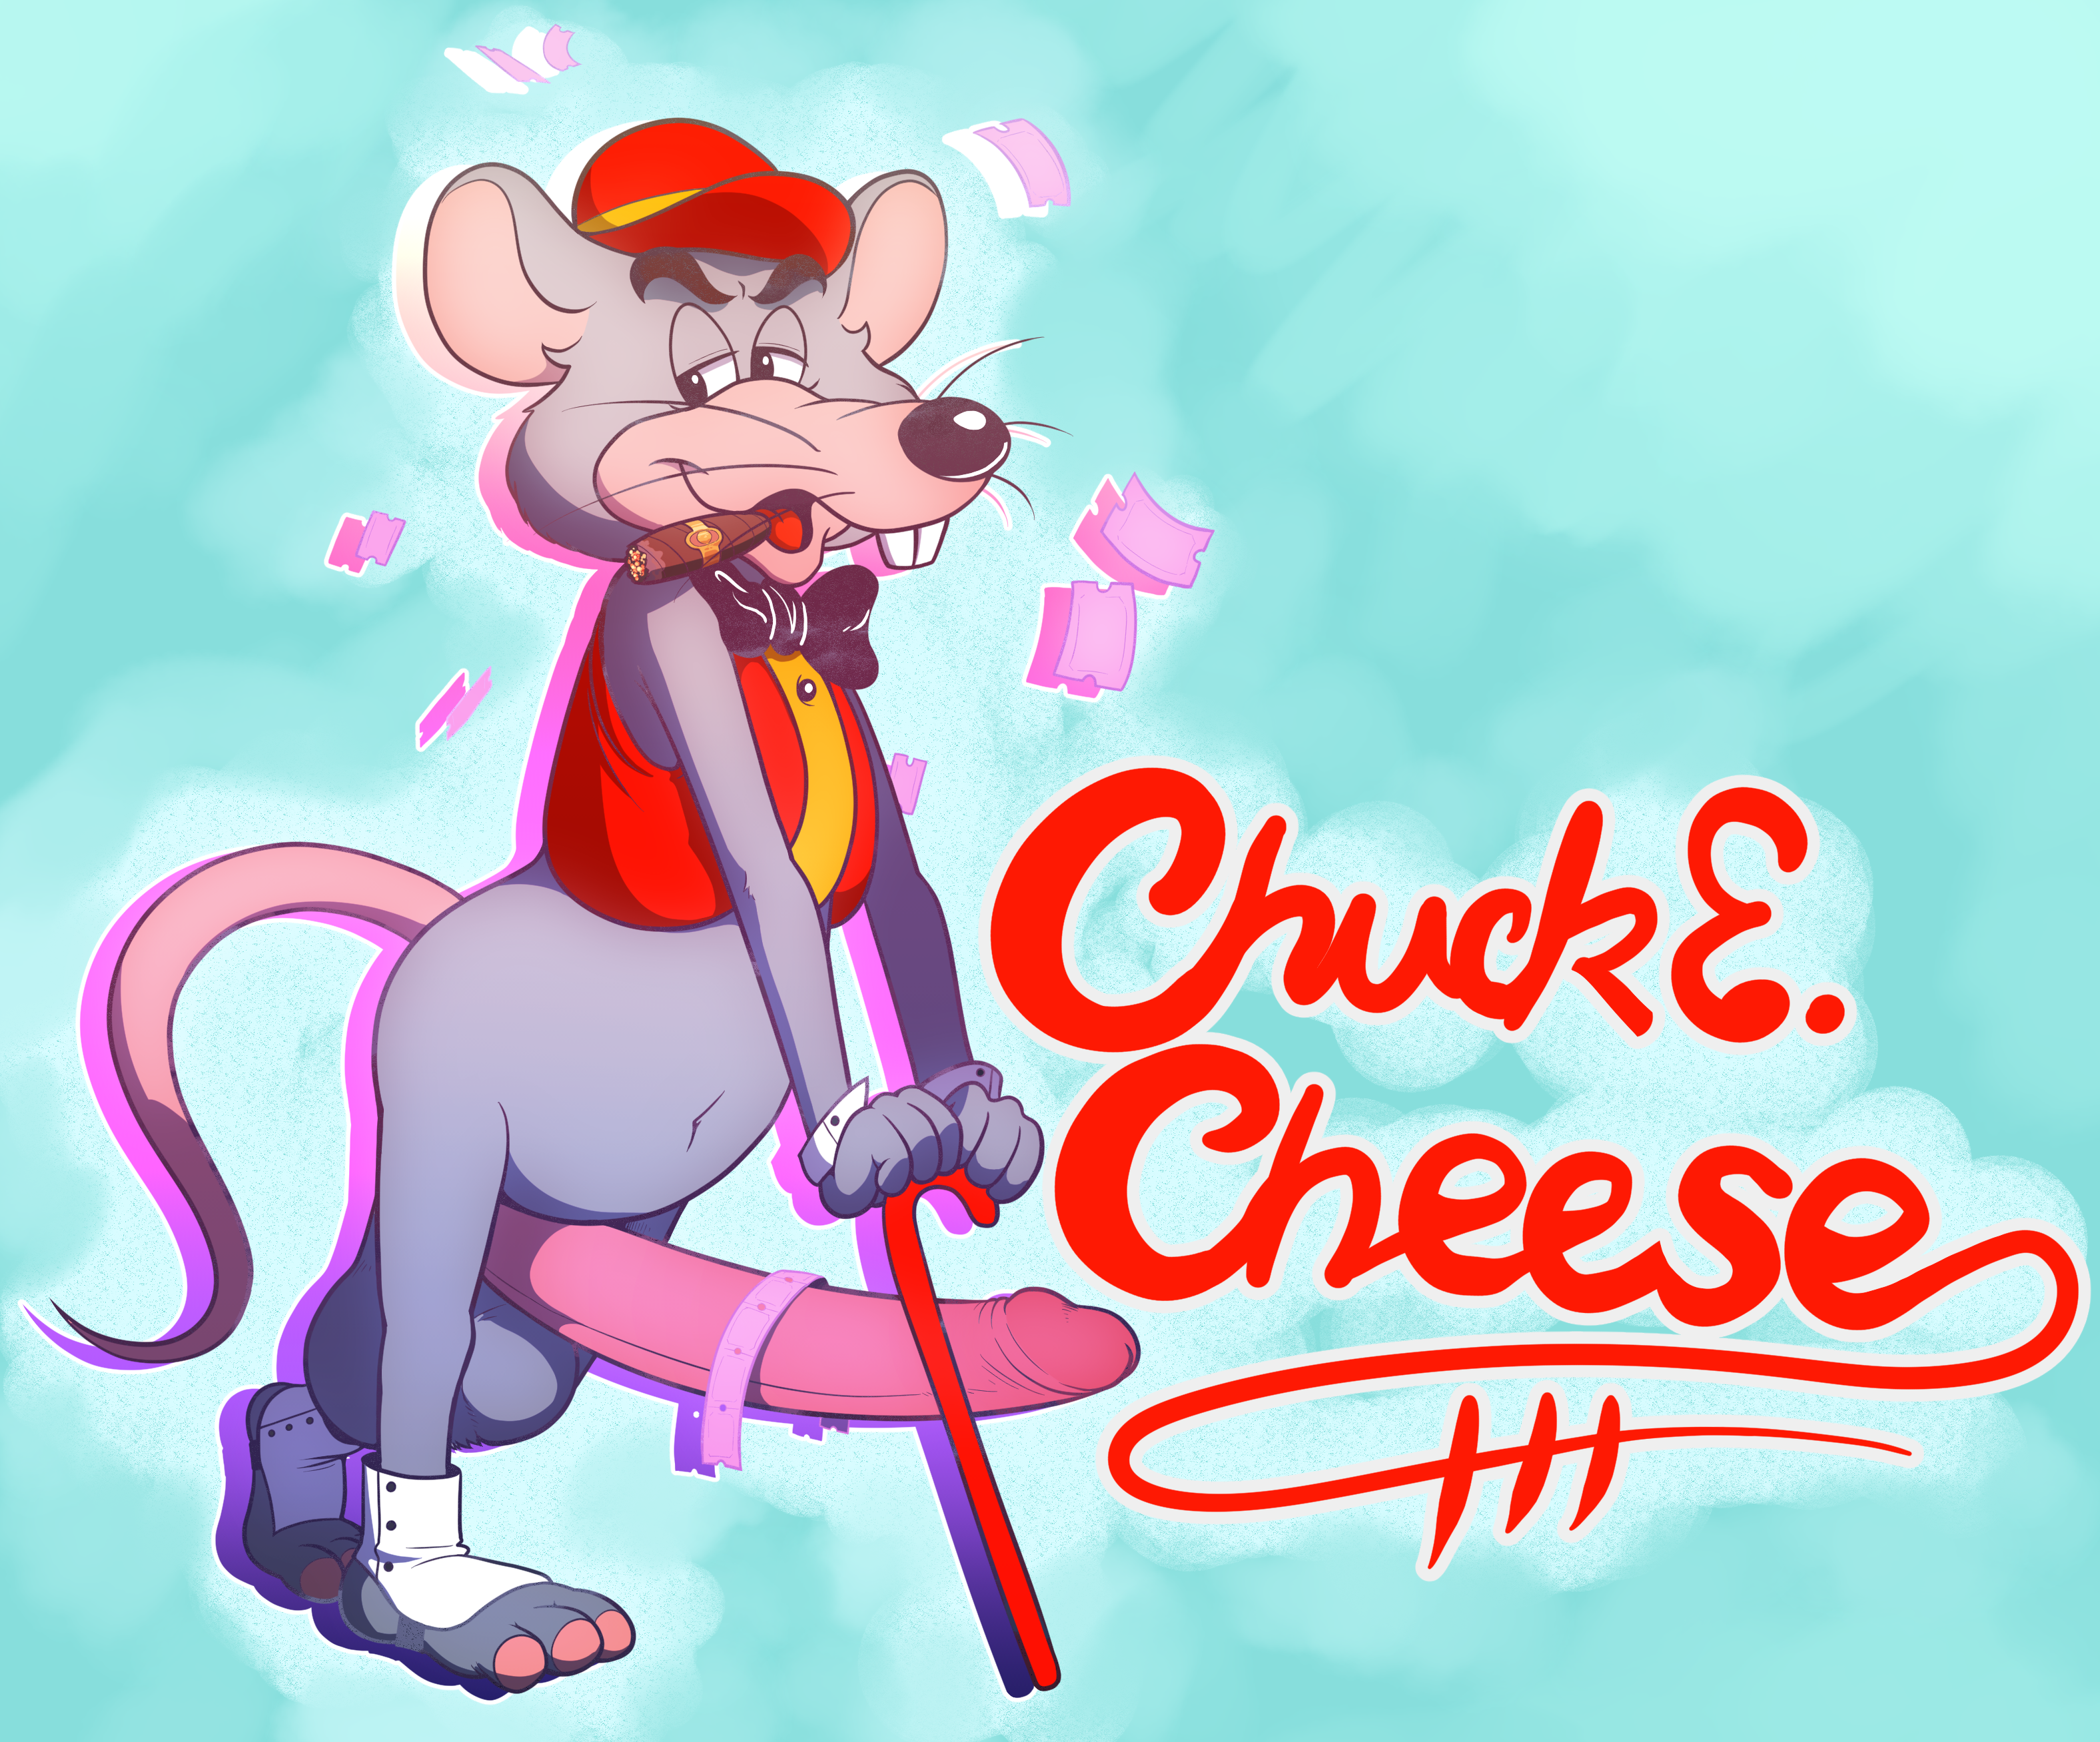 Chuck e cheese naked